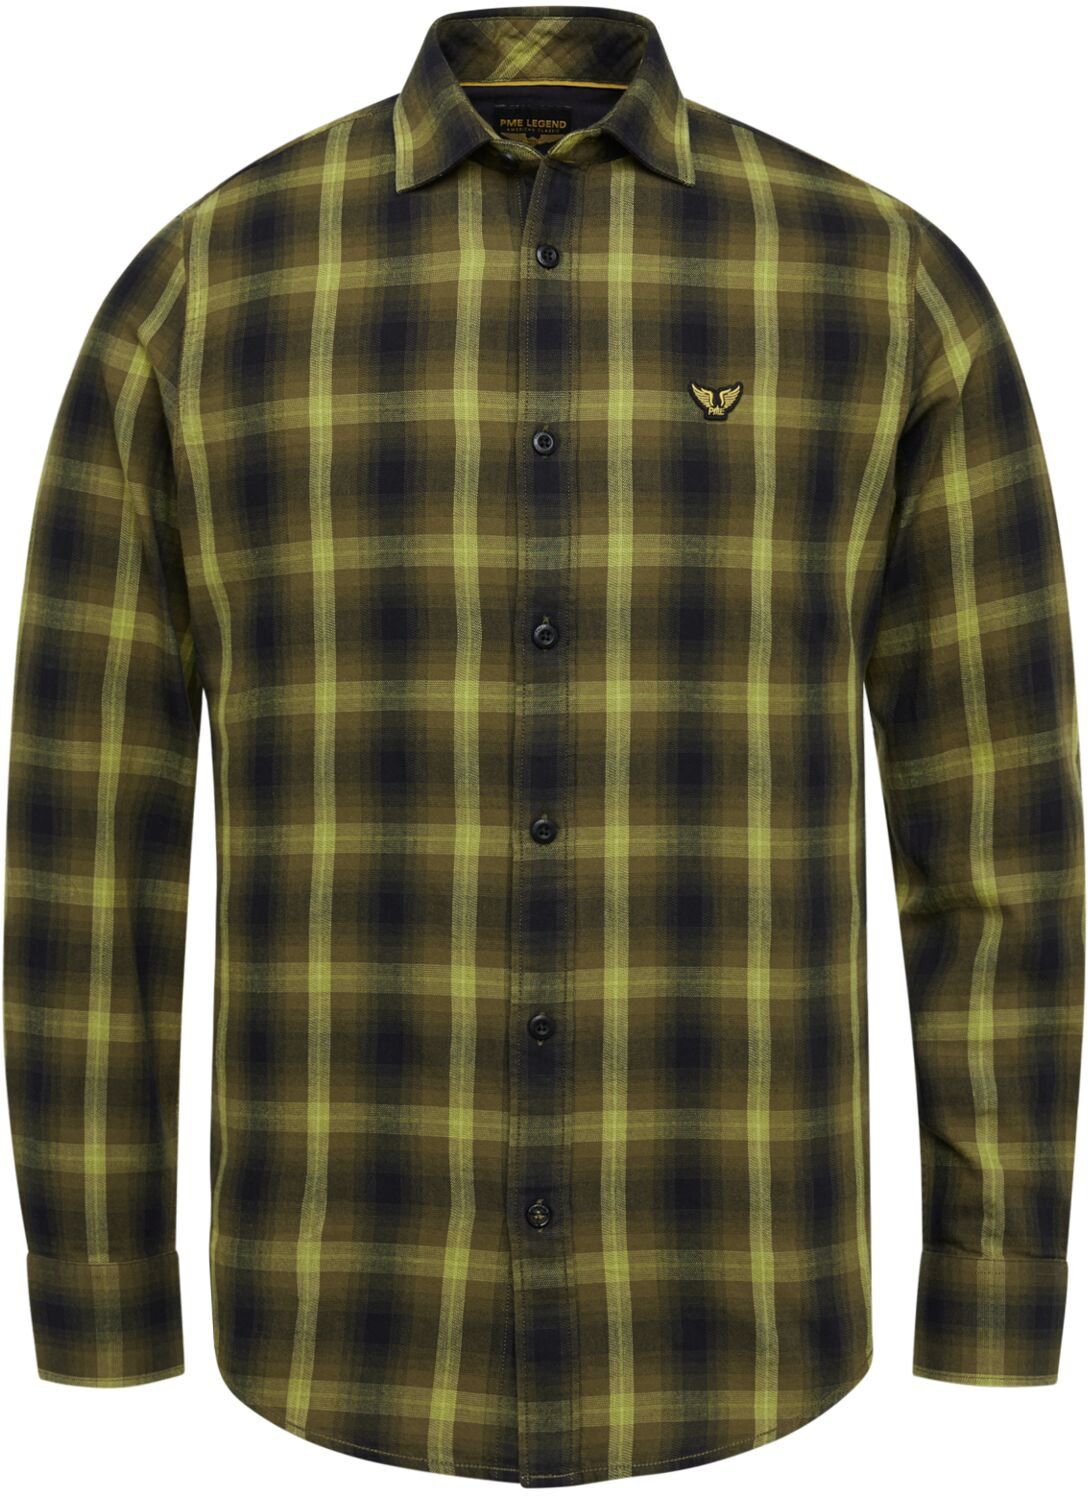 PME Legend Shirt Checkered  Green size 3XL